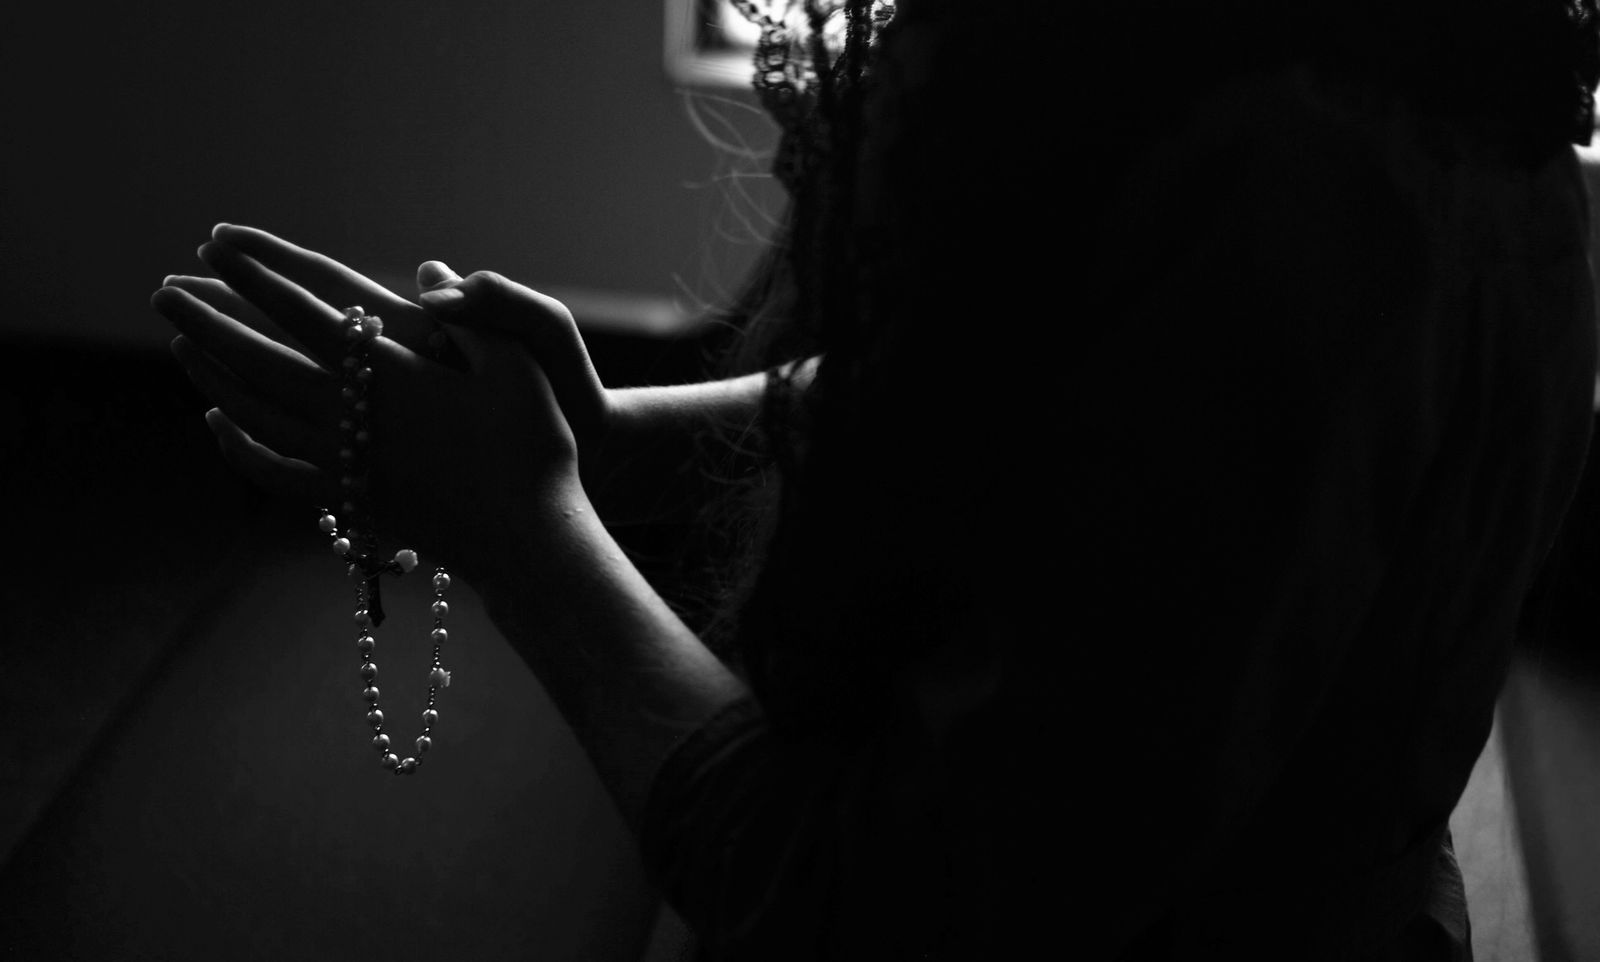 Hands held in prayer